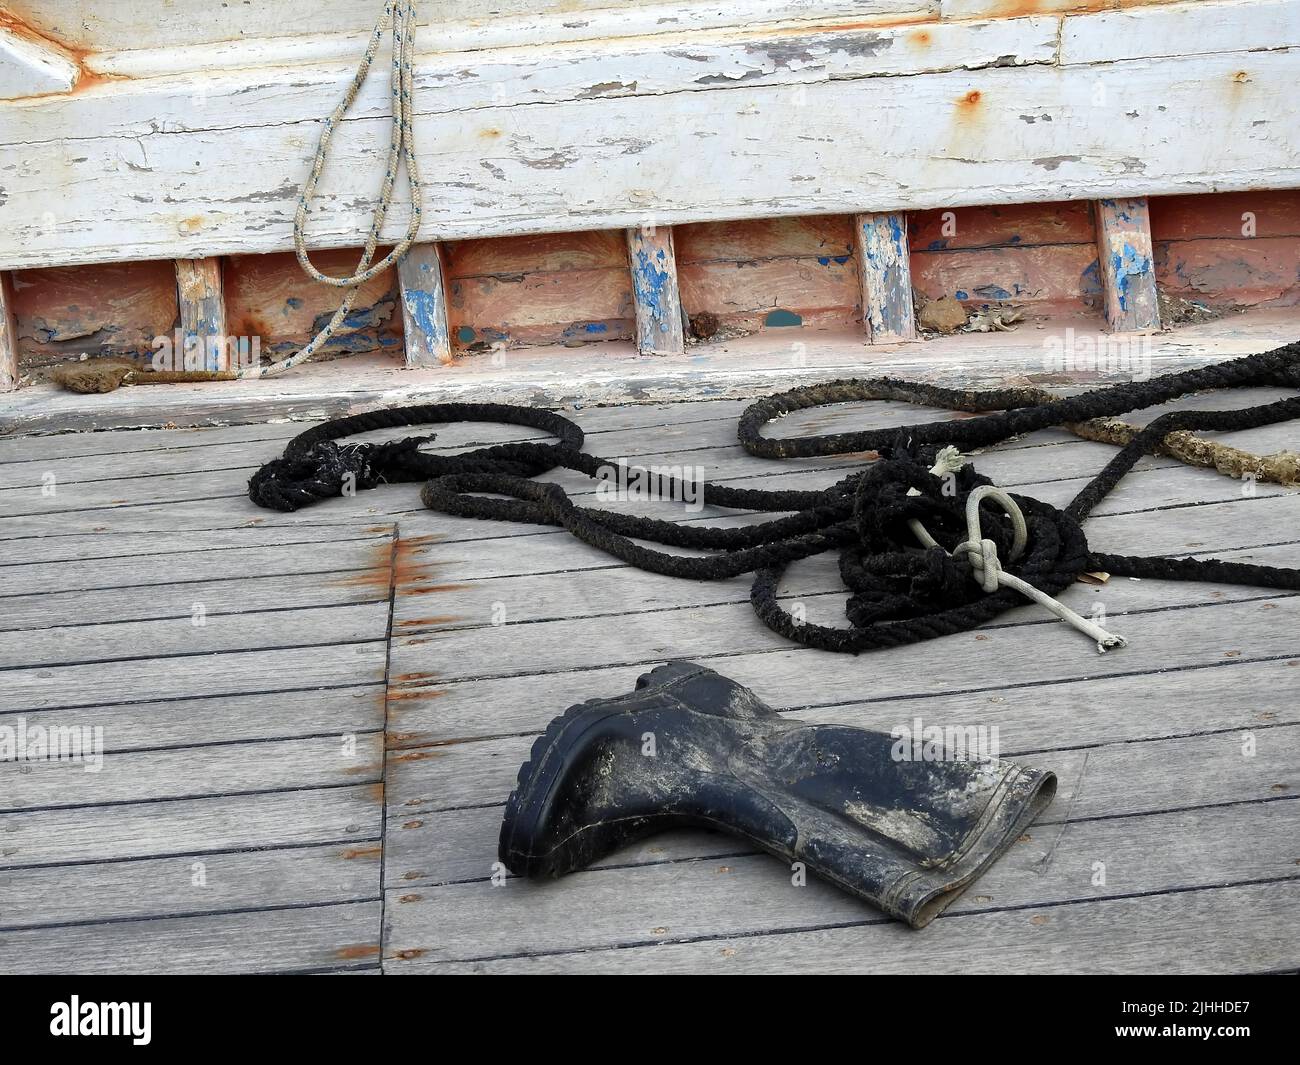 Cordes et bottes en caoutchouc sur le pont du bateau de pêche Banque D'Images